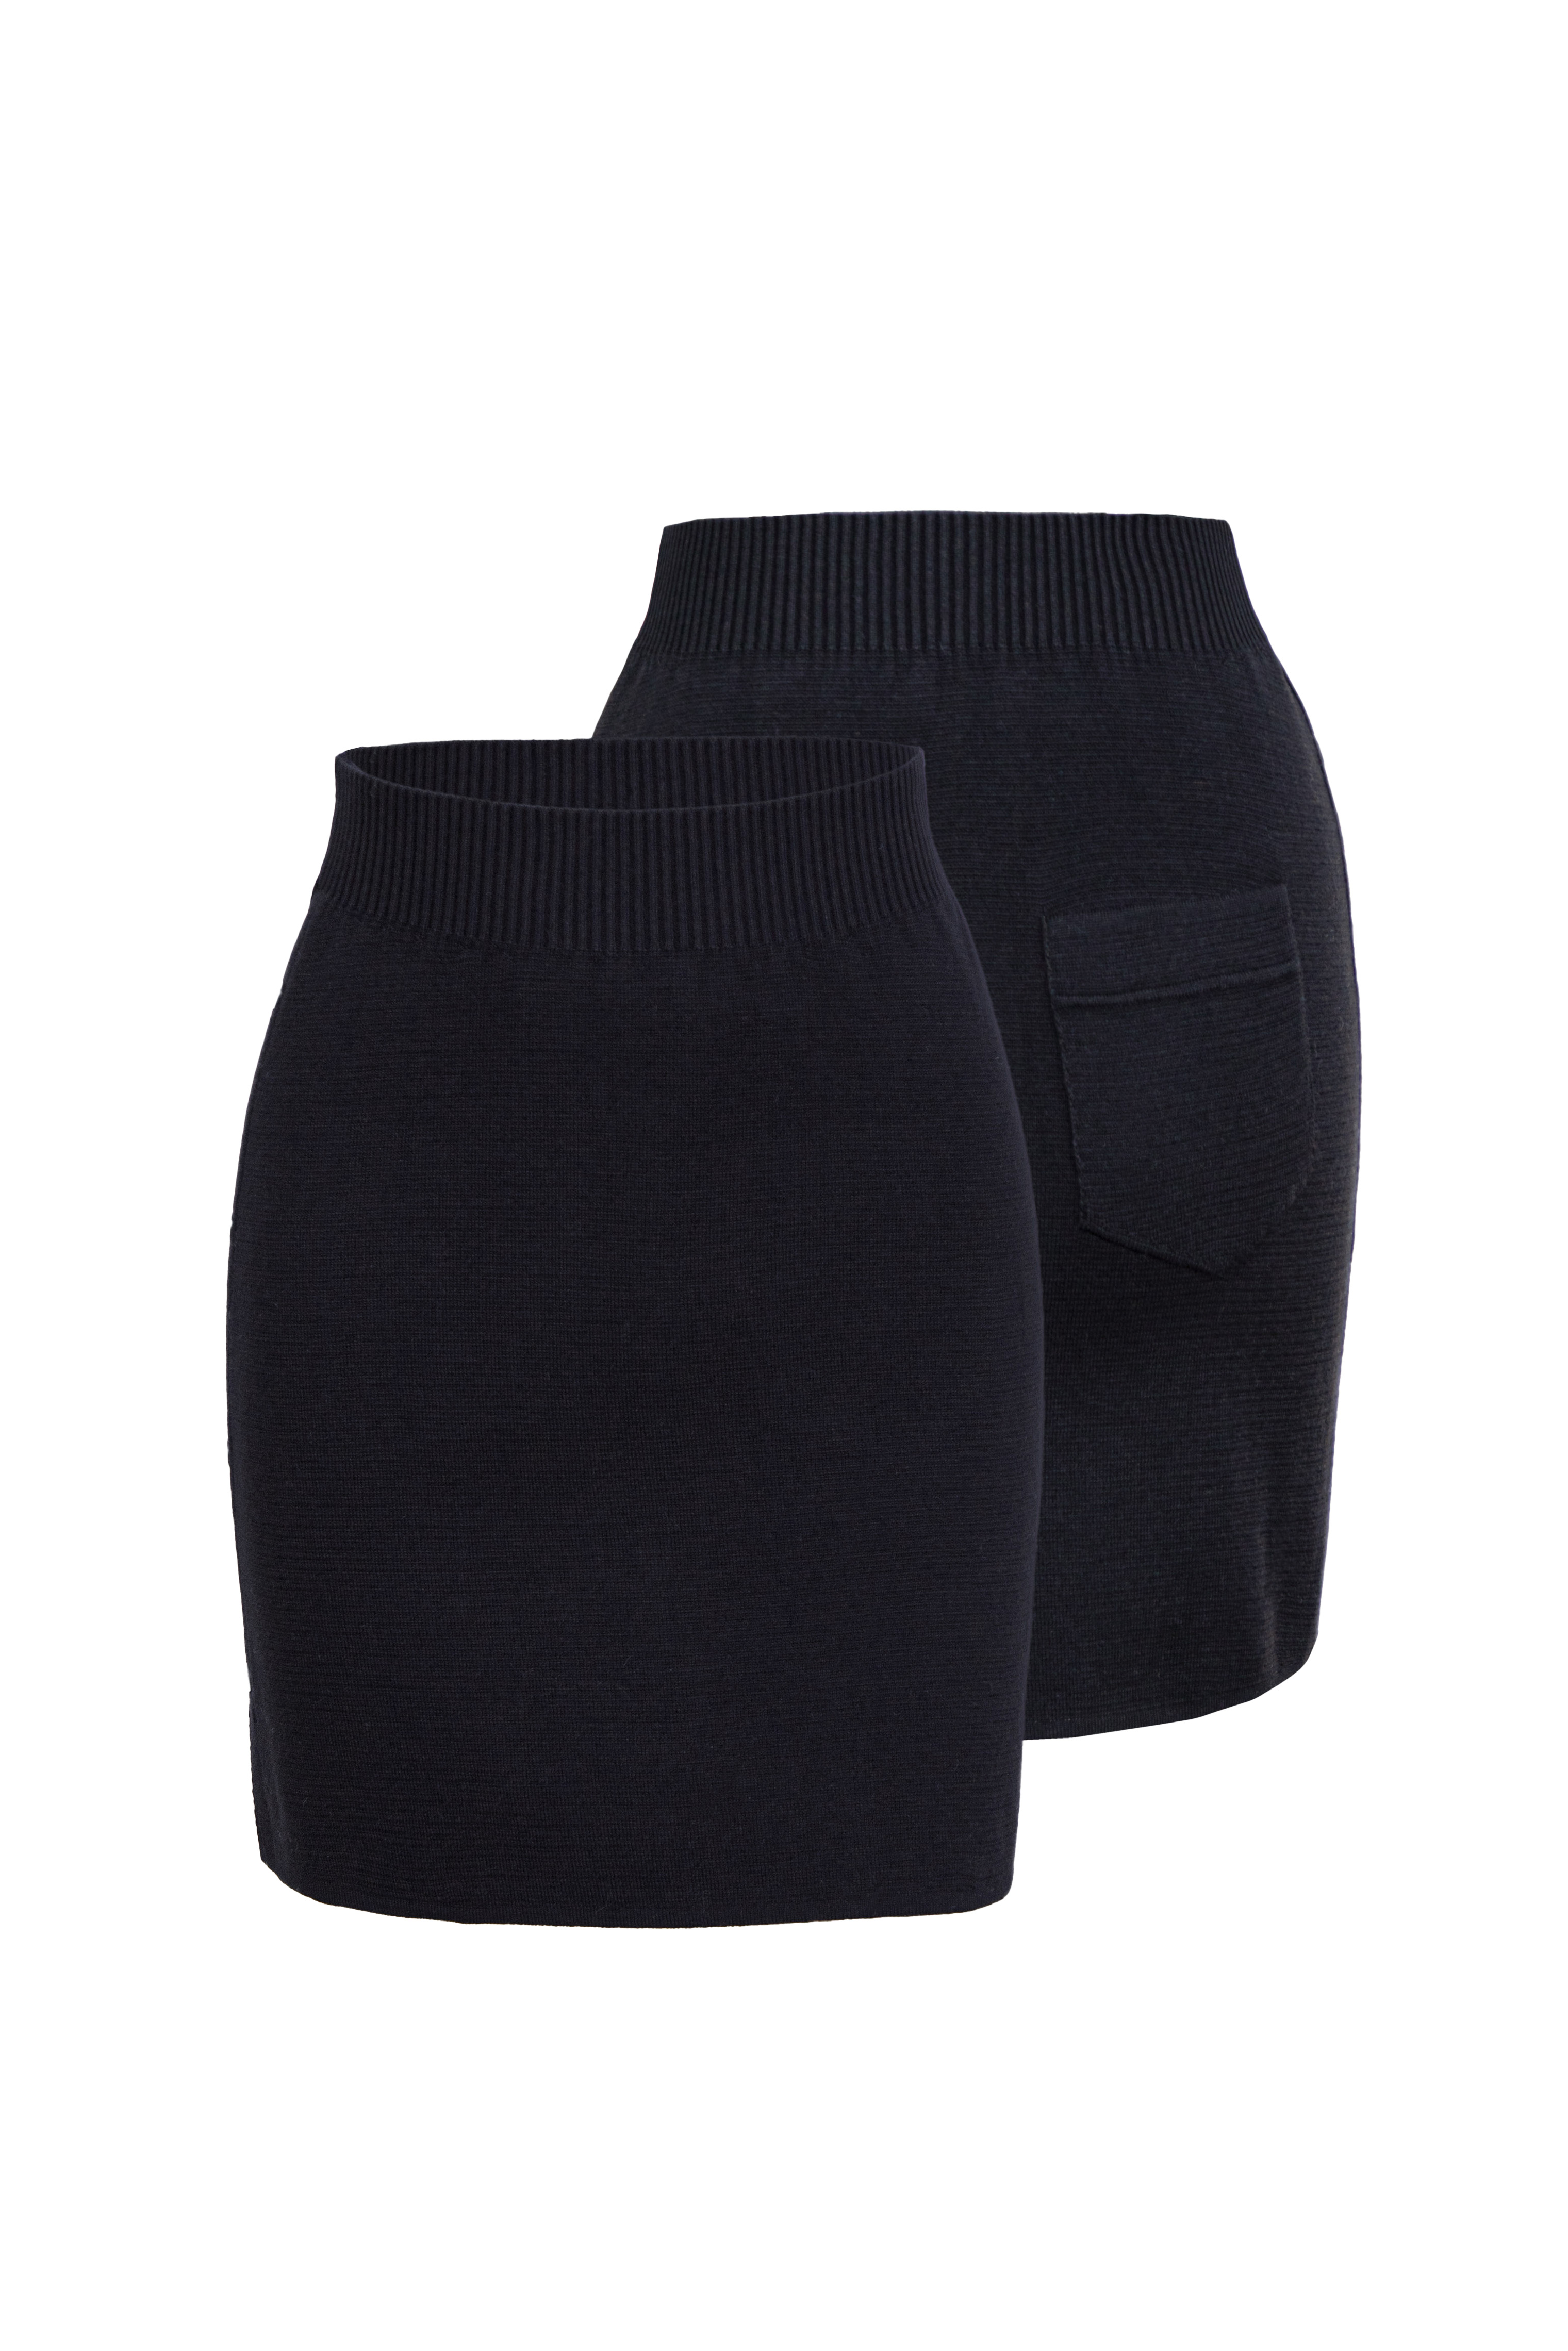 Skirt 4372-01 Black from BRUSNiKA